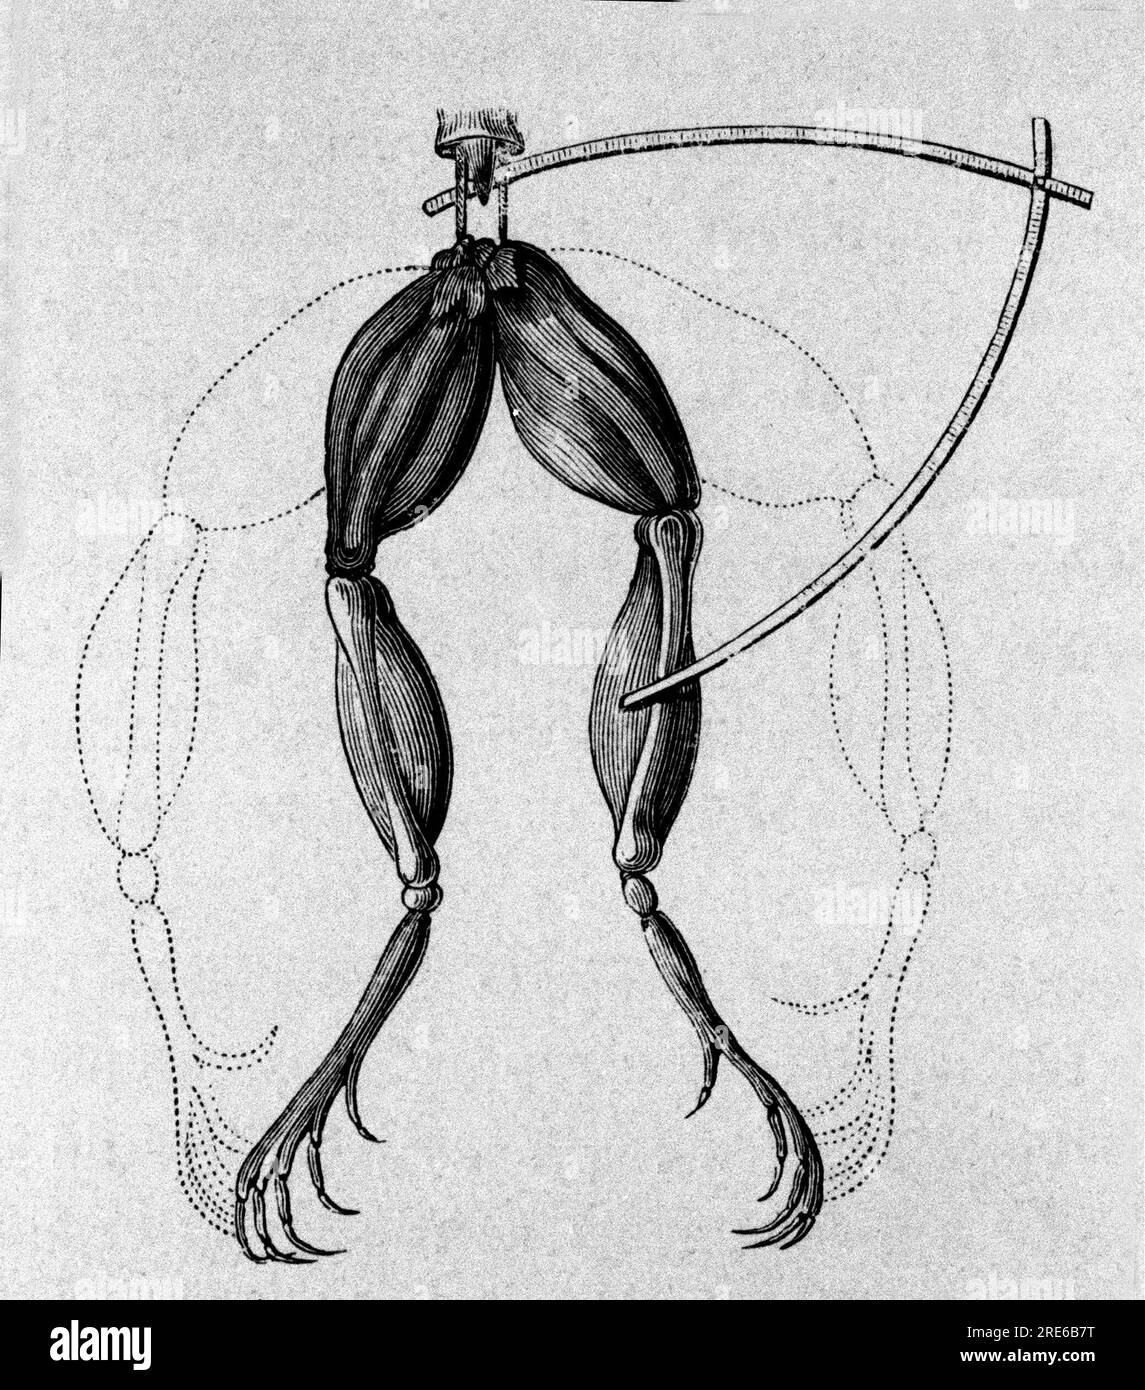 Darstellung von Experimenten von Luigi Galvani, italienischer Physiker und Arzt (1737-1798), die den Verlauf des elektrischen Stroms erklären, der die Beine eines Frosches bewegt. Stockfoto